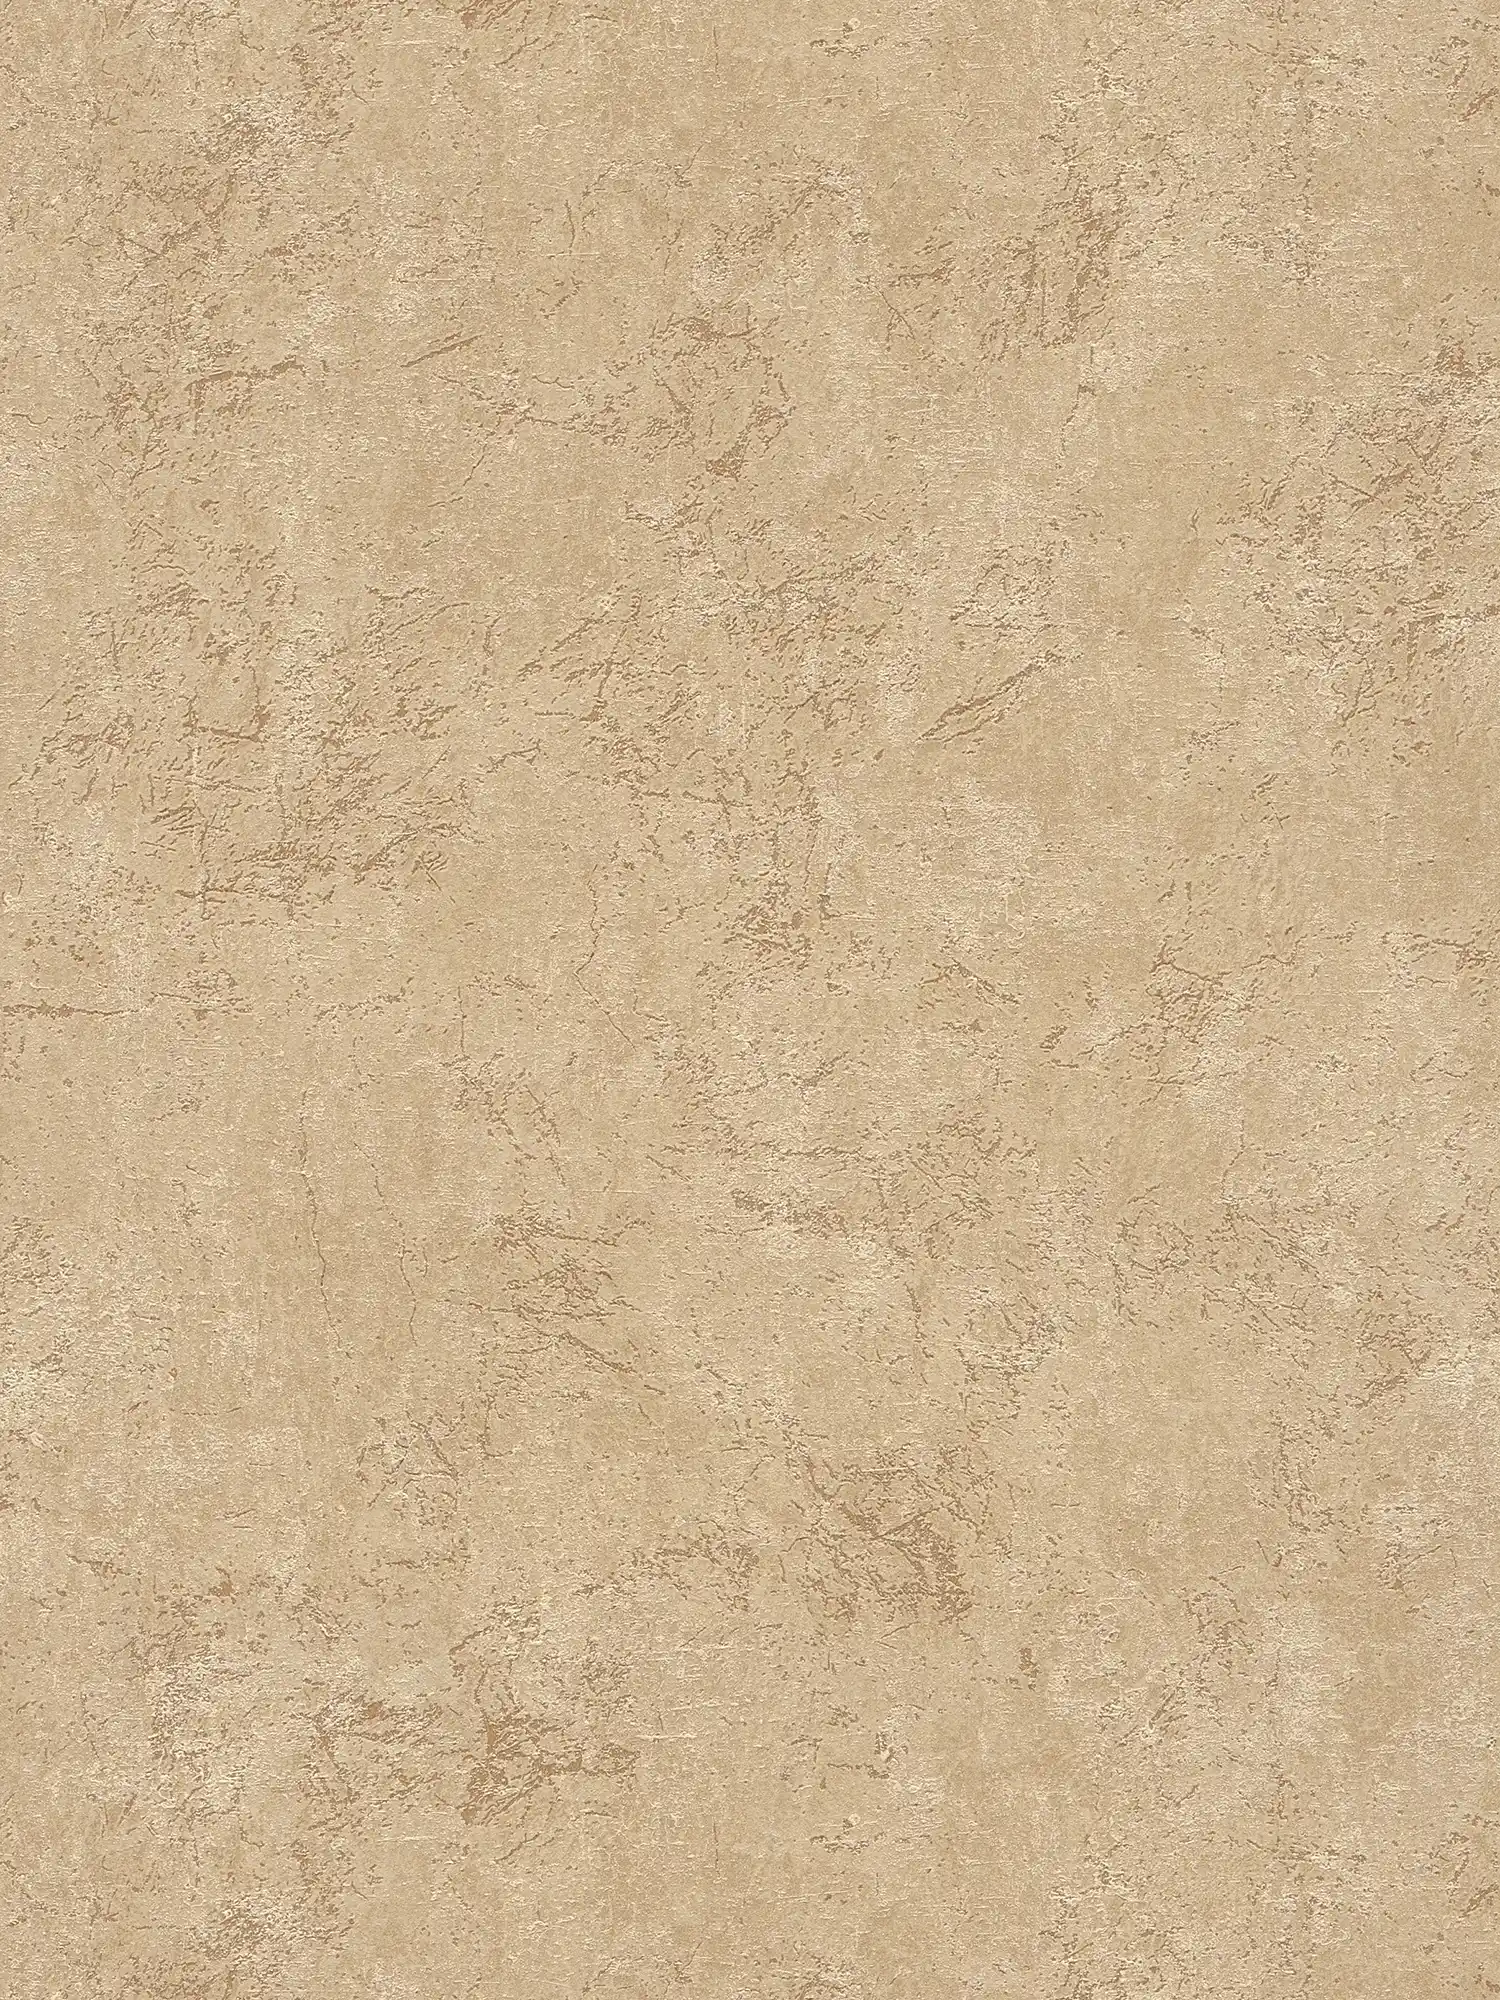 Wallpaper stone look light beige in sandstone look
